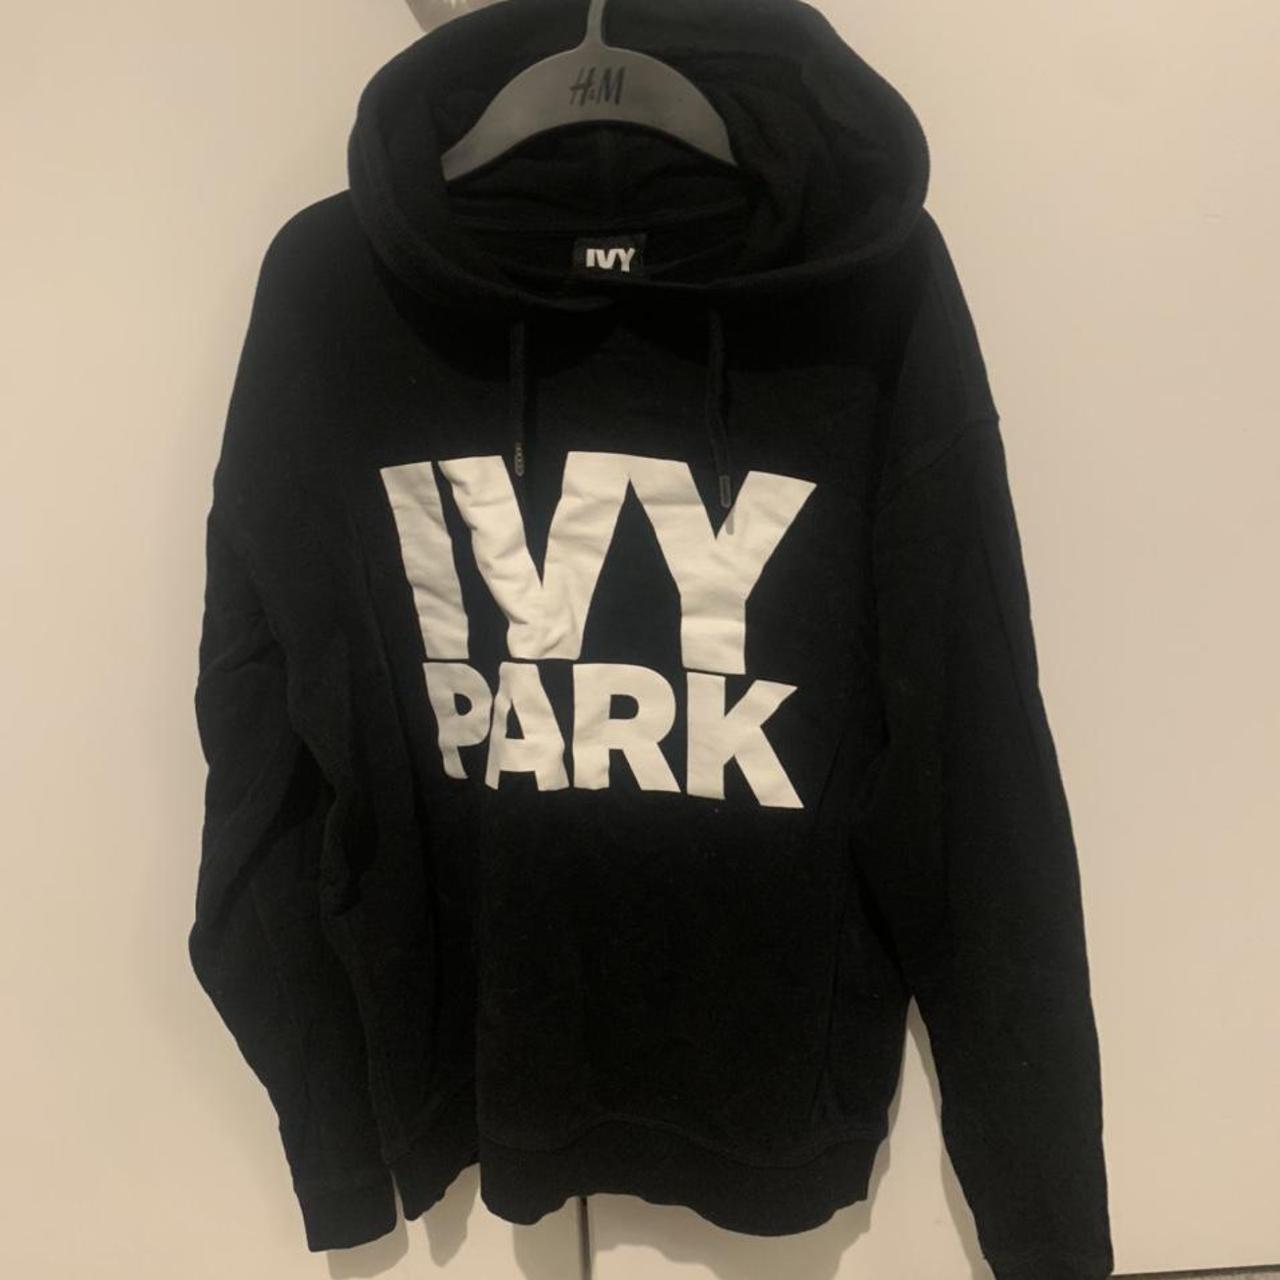 IVY PARK black hoody #ivypark #blackhoody - Depop